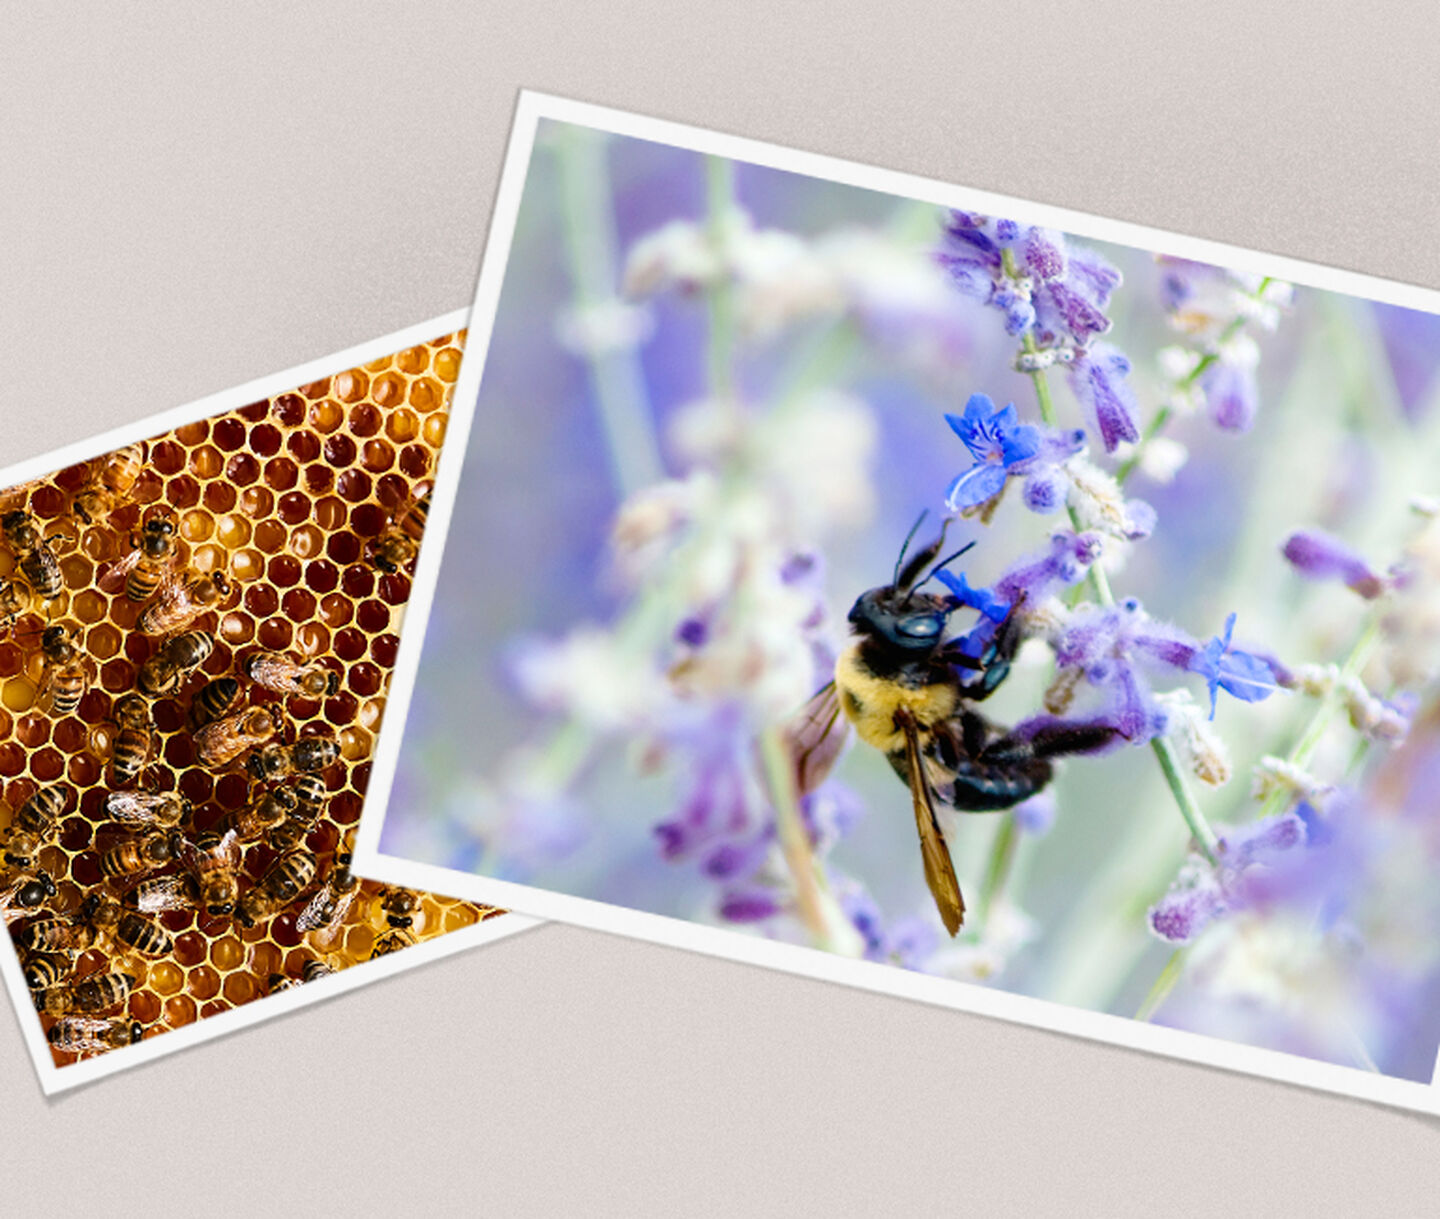 Deux photographies d'abeilles. L'une sur une fleur et l'autre dans une ruche.